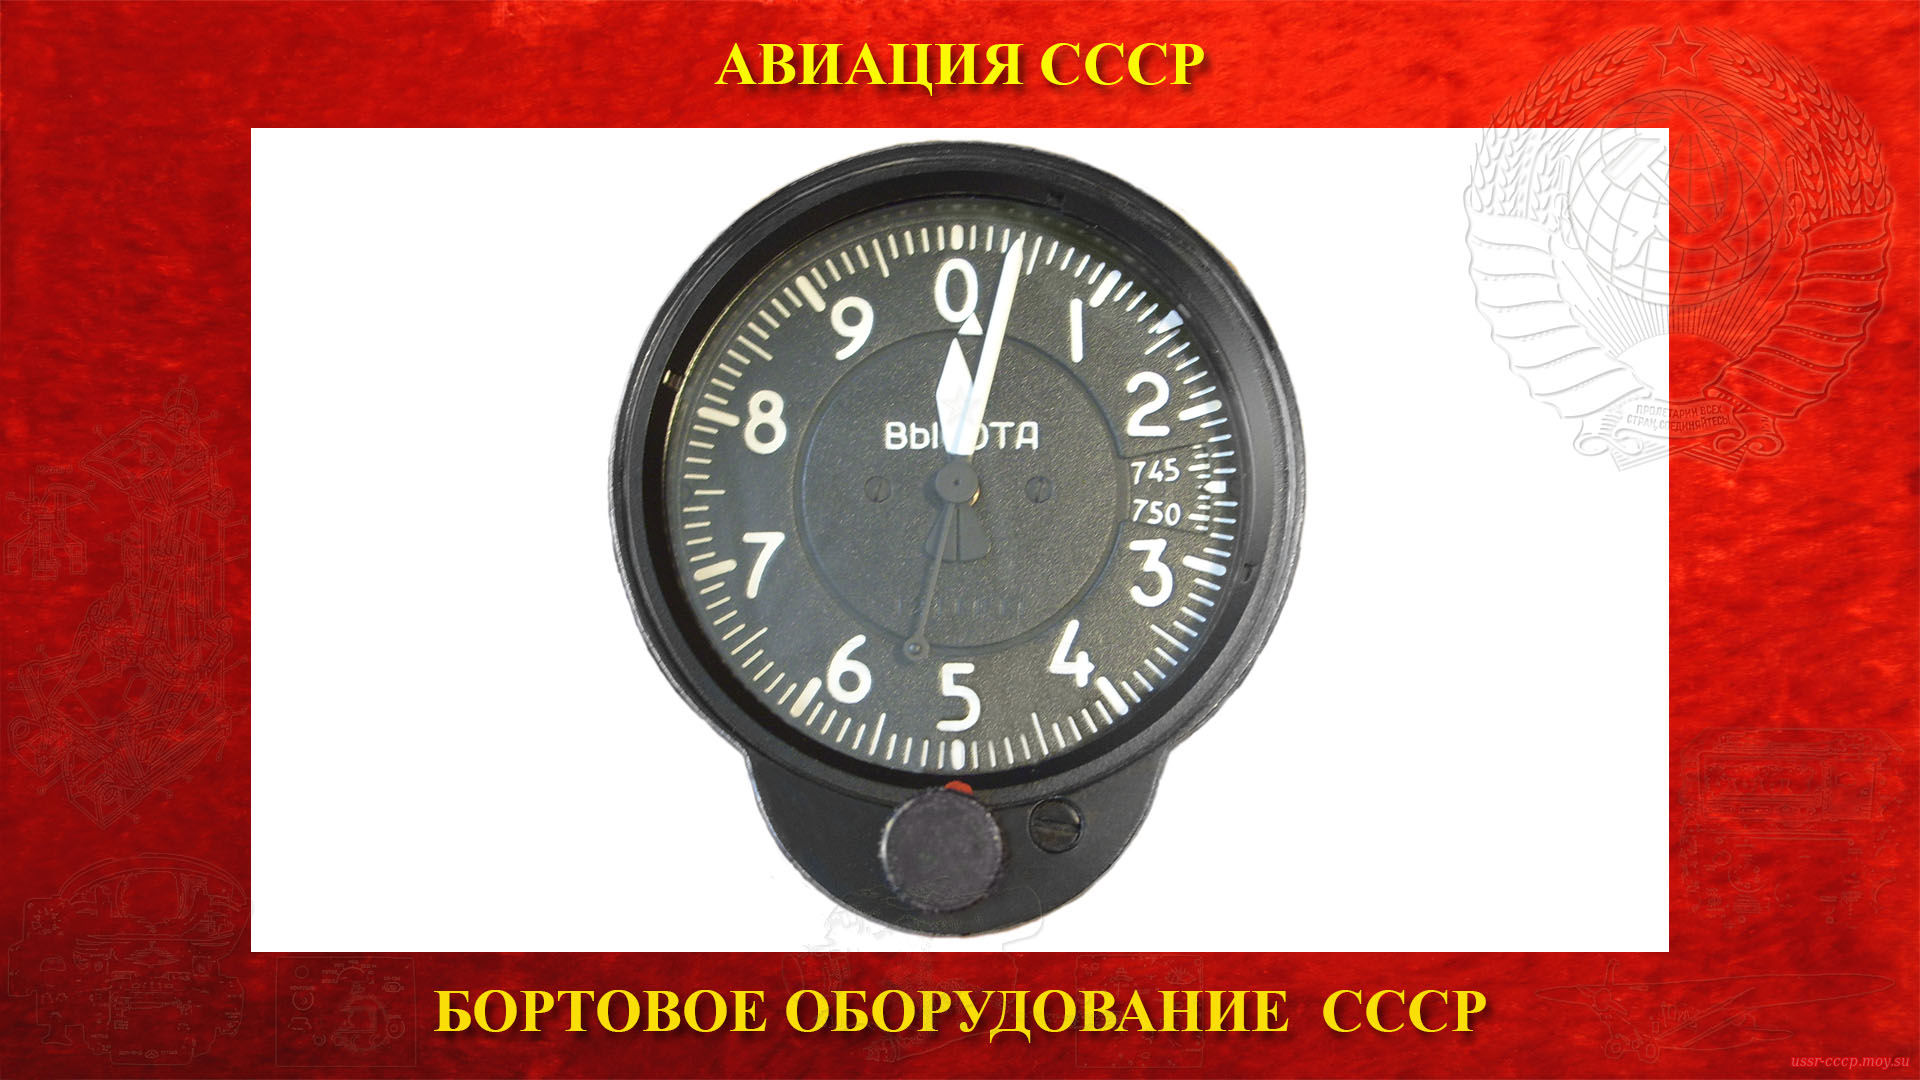 ВД-10 — Двухстрелочный высотомер СССР — Указатель высоты полёта (повествование)